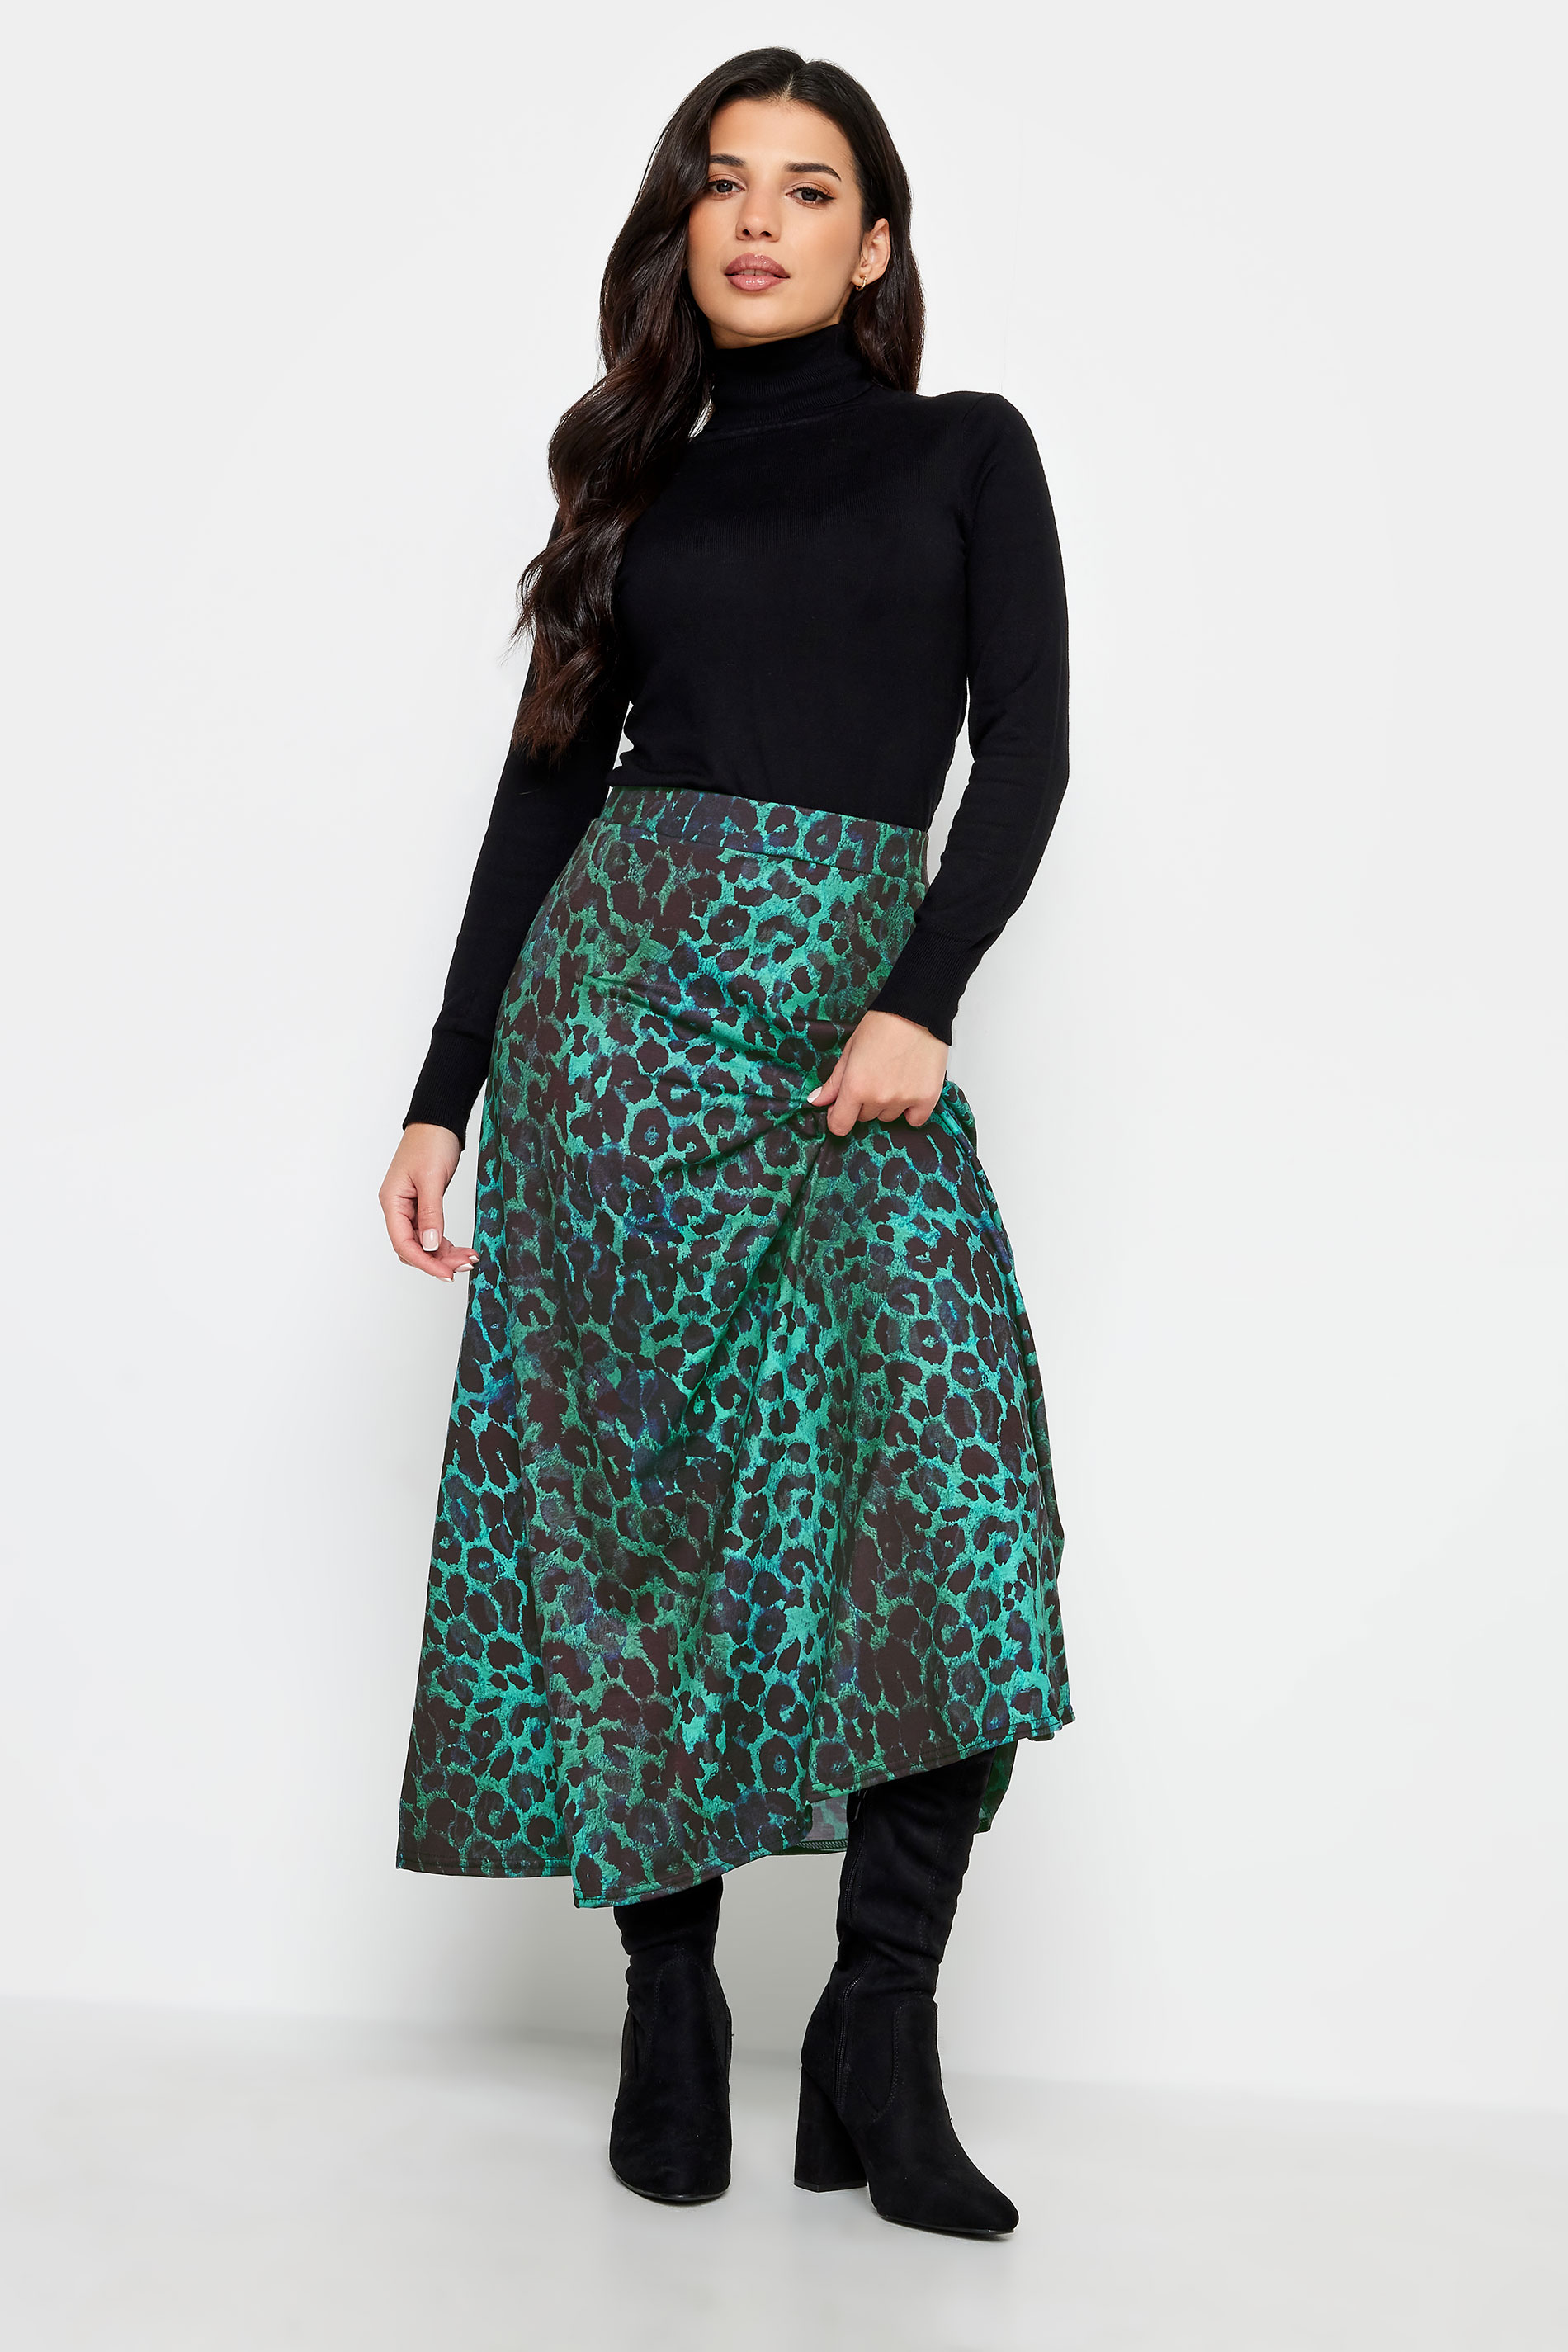 PixieGirl Blue Leopard Print Maxi Skirt | PixieGirl 2